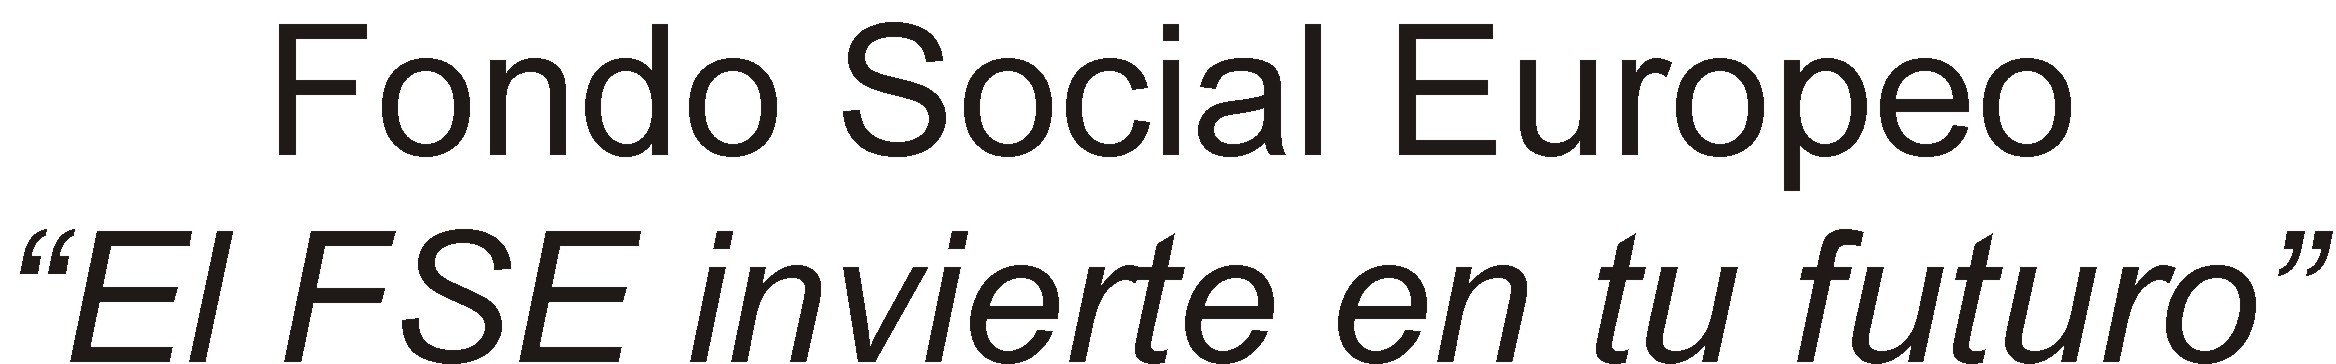 Seguridad Social Ministerio de Empleo y Seguridad social. Para más información visite www.aytobadajoz.